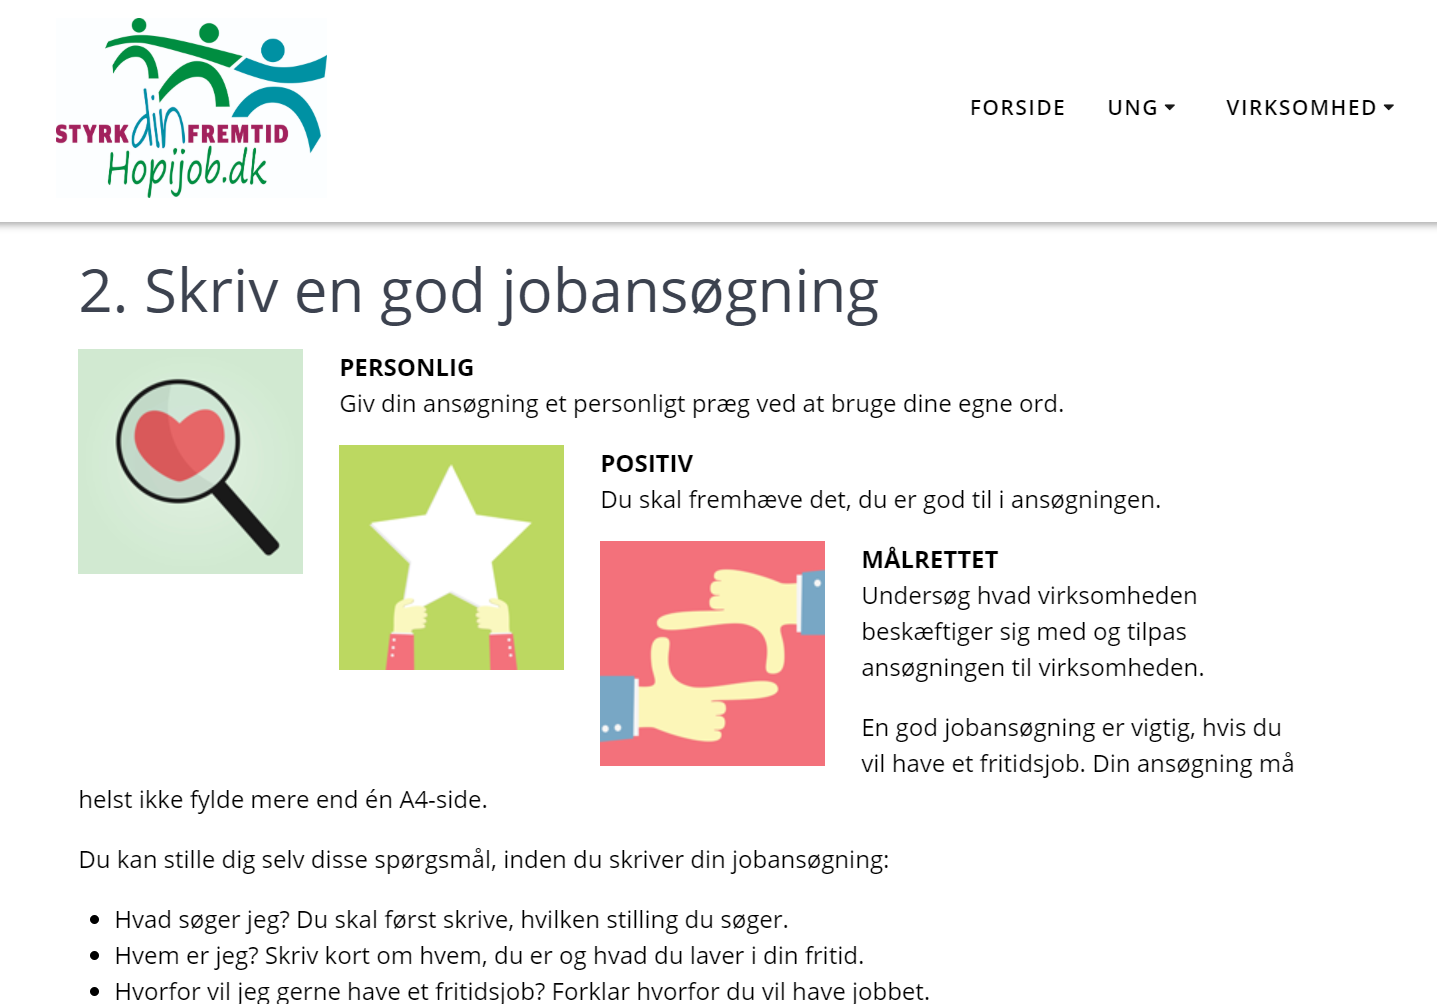 På hopijob.dk kan unge få hjælp til at søge fritidsjob, og virksomheder kan melde sig til projektets jobbank.